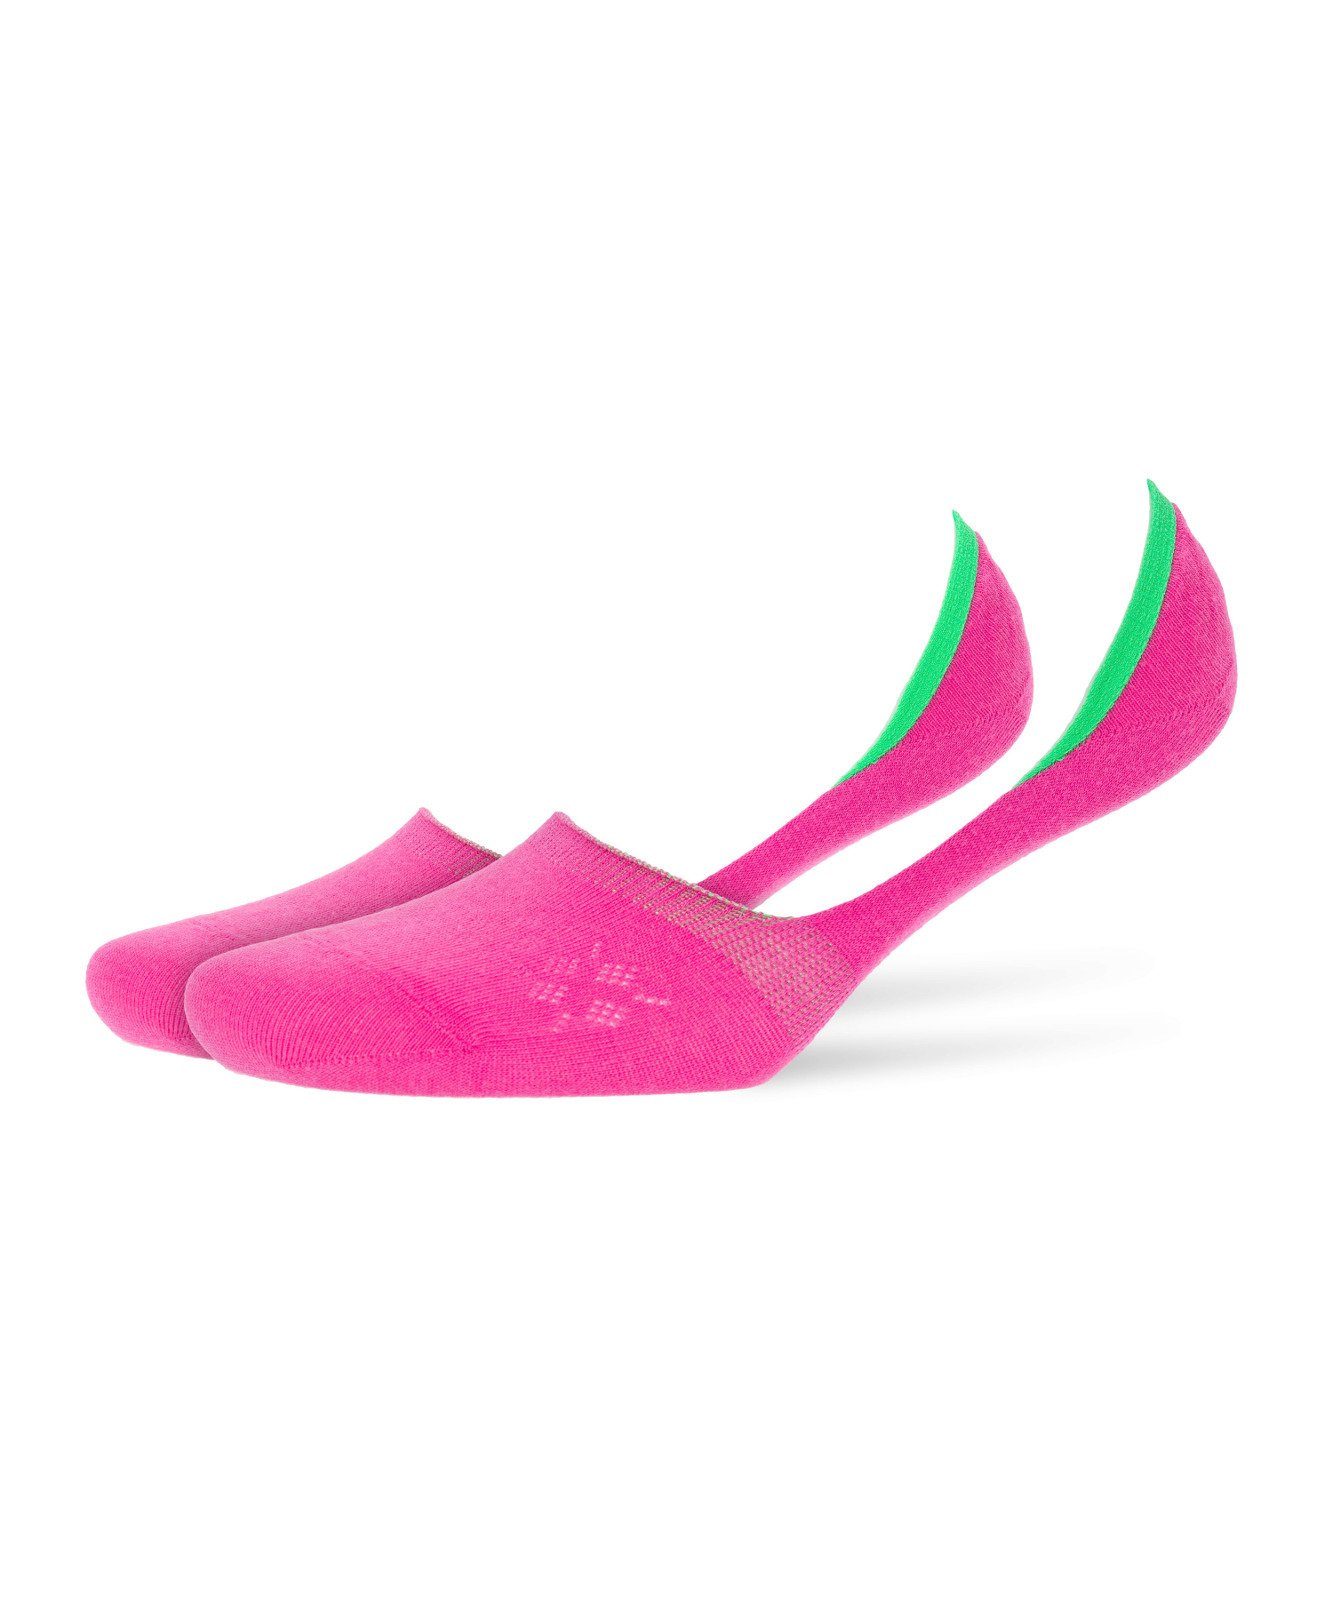 Burlington Füßlinge Damen Socken Everyday 2er Pack - Fuesslinge, Anti Pink